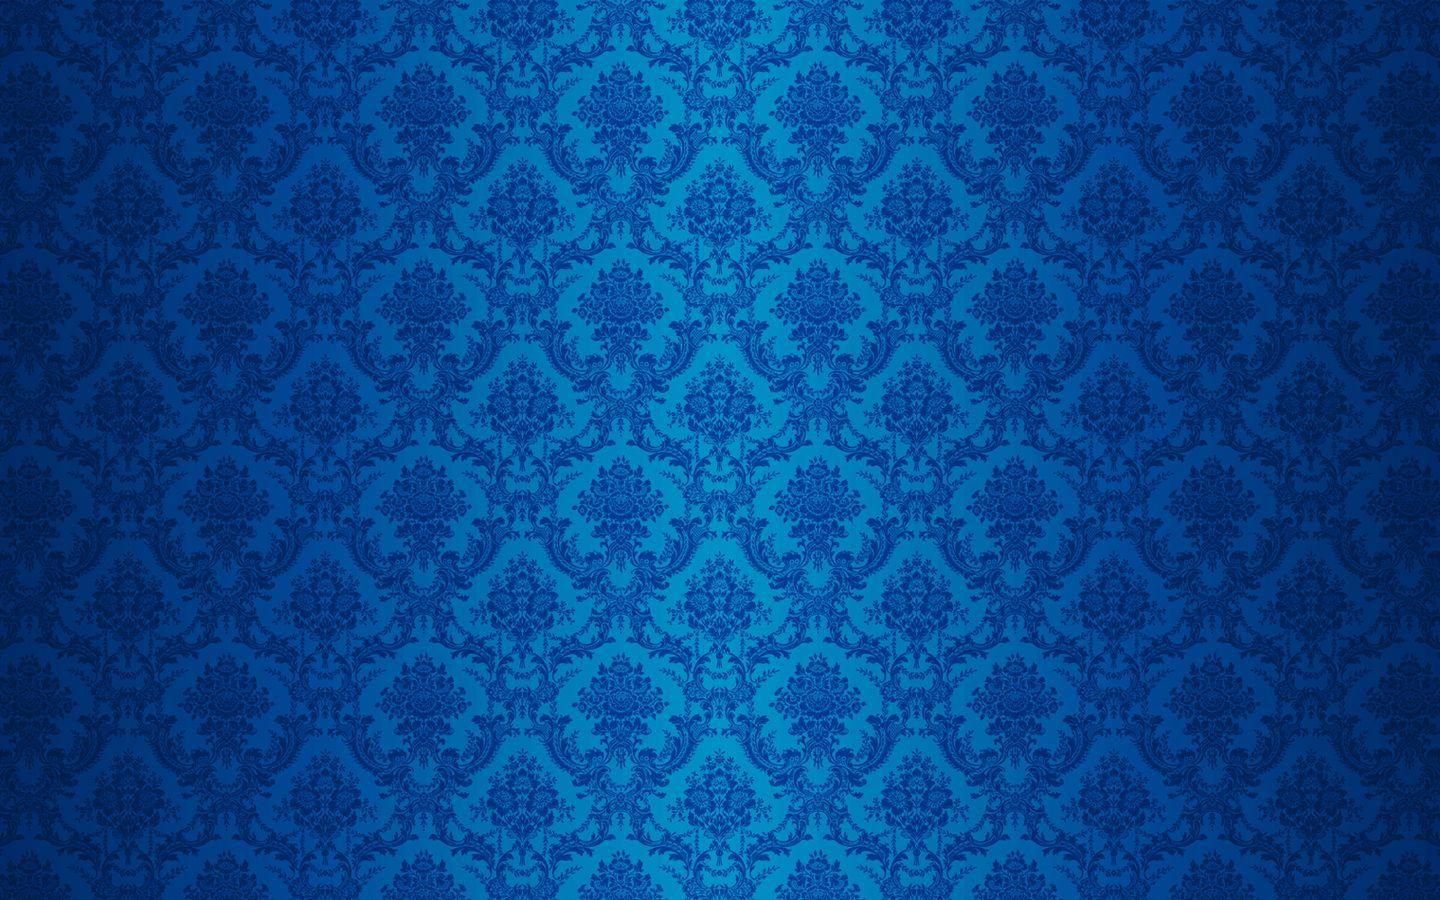 Muốn tìm kiếm những hình nền đẹp với tông màu Royal Blue thật hoàn hảo? Không nên bỏ qua bộ sưu tập Top Những Hình Ảnh Đẹp với những thiết kế độc đáo và hấp dẫn, chắc chắn sẽ làm cho màn hình của bạn trở nên nổi bật hơn bao giờ hết. Hãy cùng khám phá trọn bộ hình nền này và tận hưởng sự sang trọng và đẳng cấp của màu sắc Royal Blue.